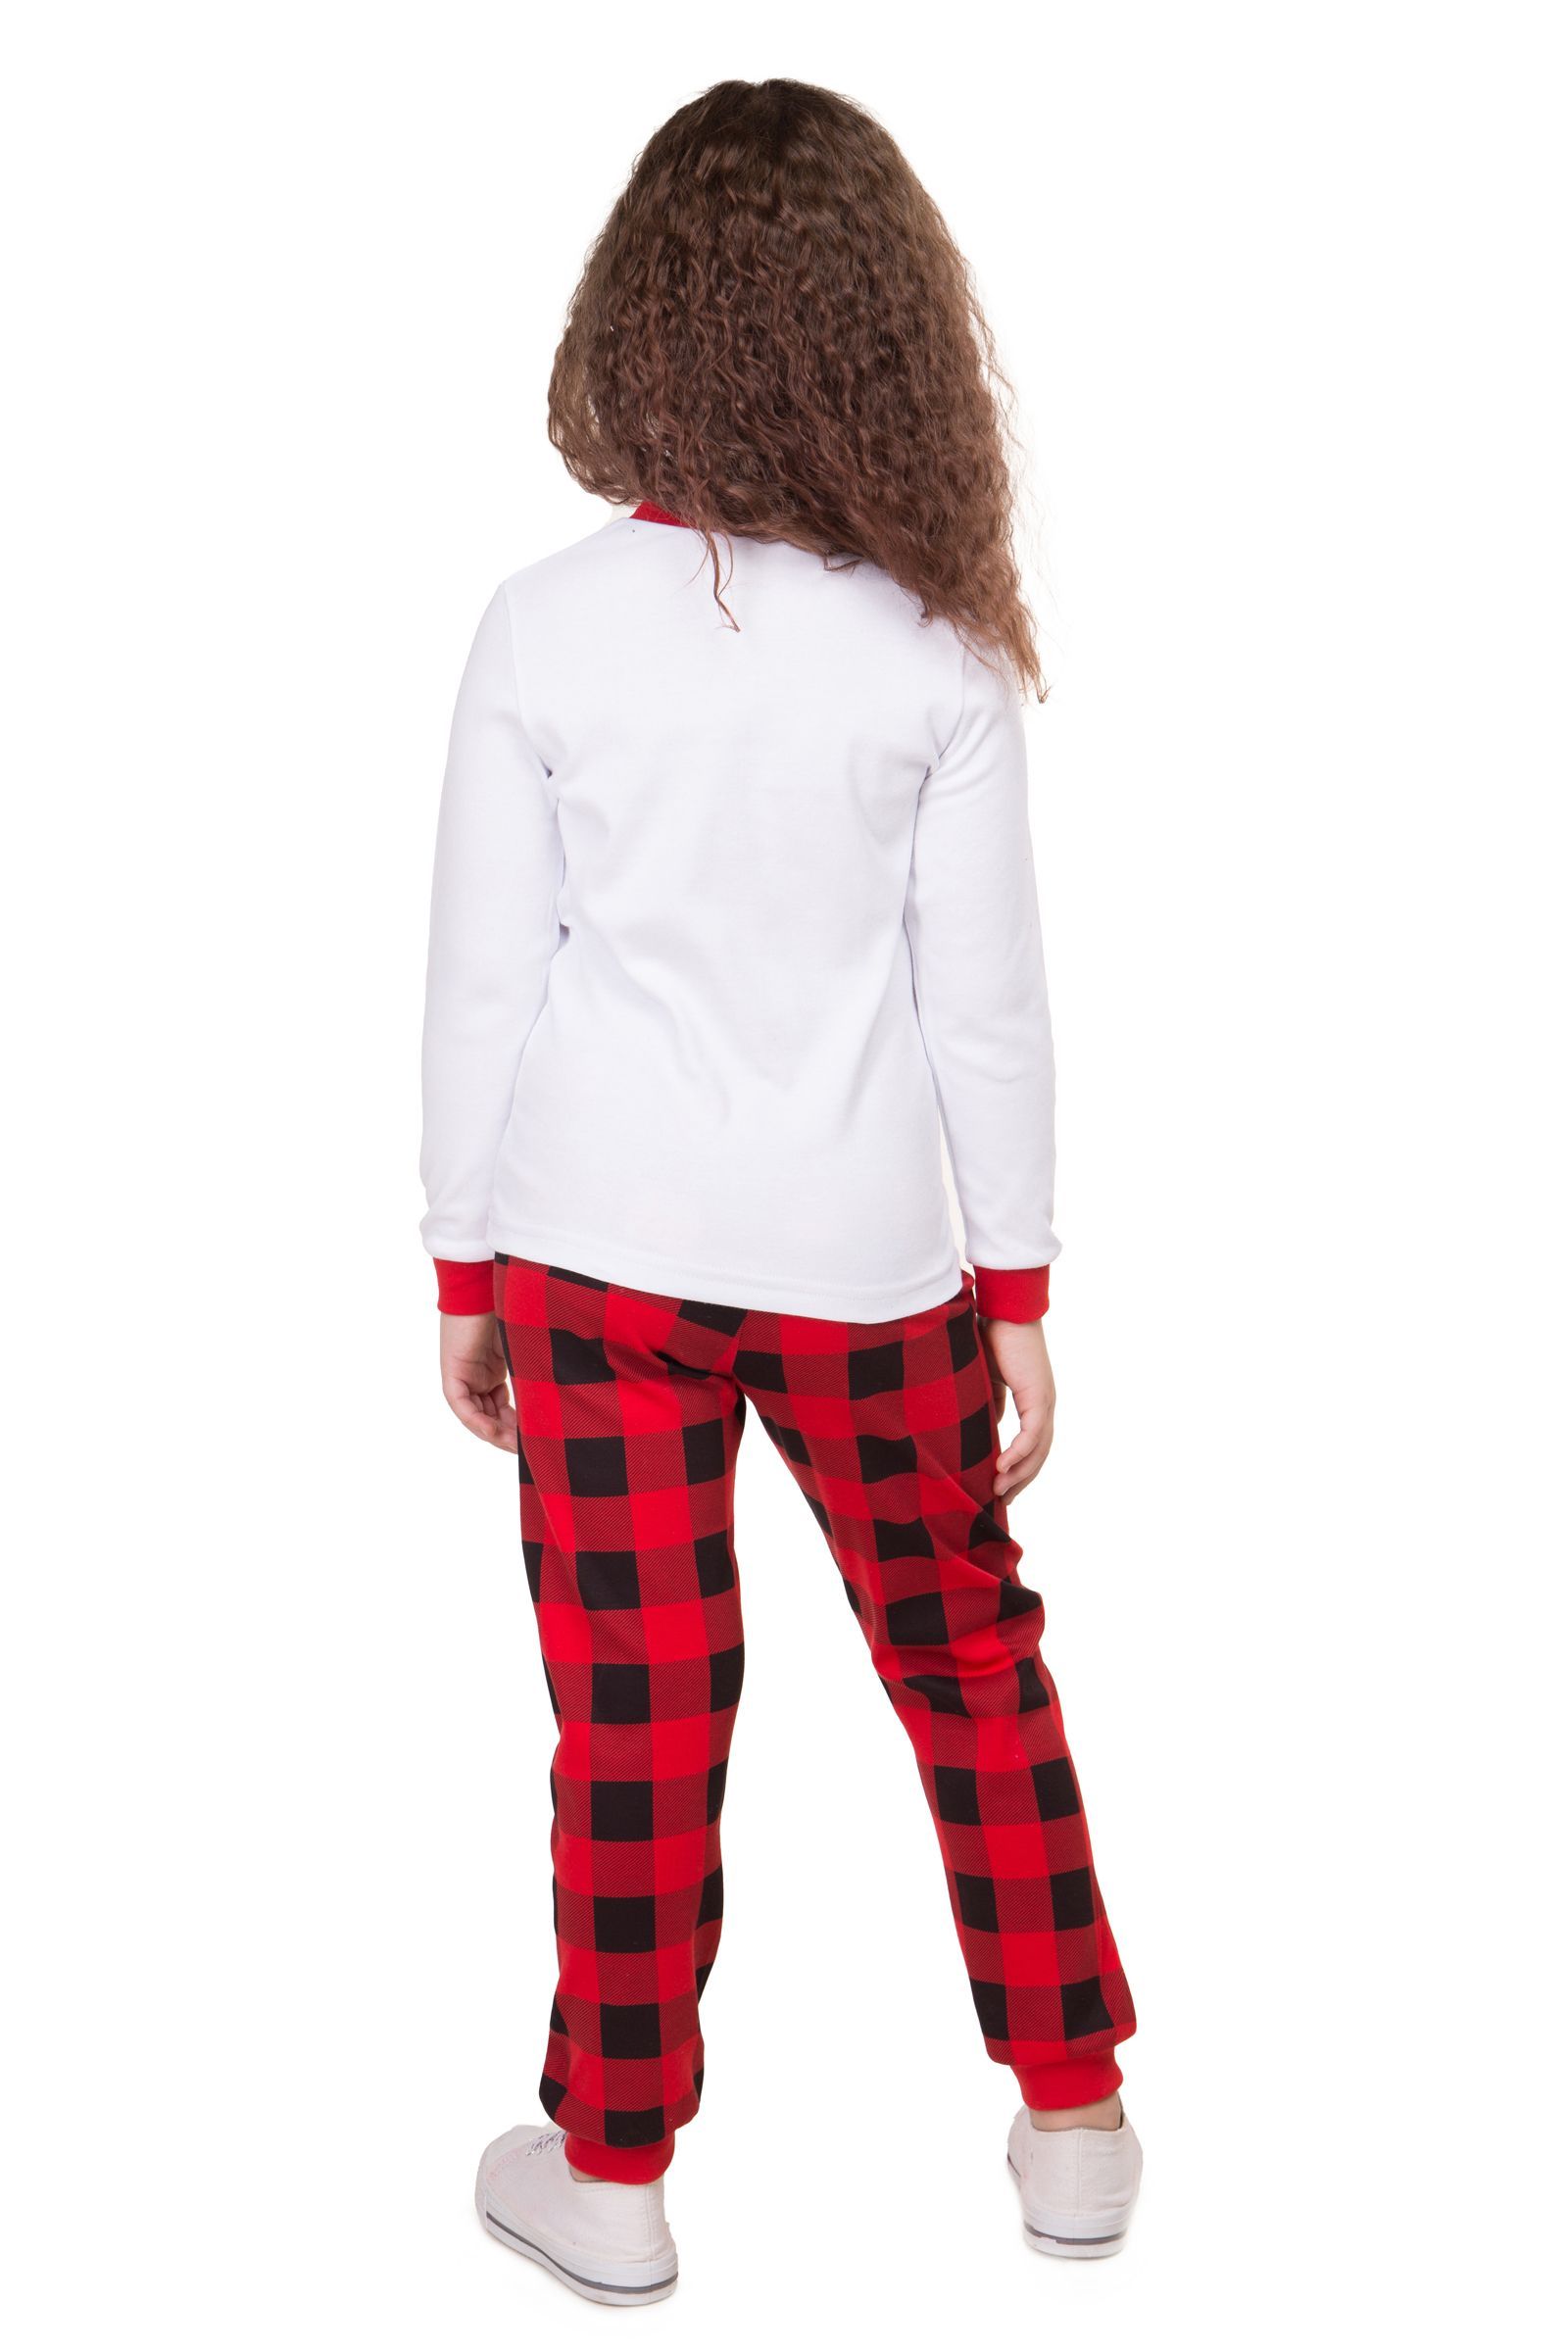 Пижама-ПЖ01-3695 оптом от производителя детской одежды 'Алёна'